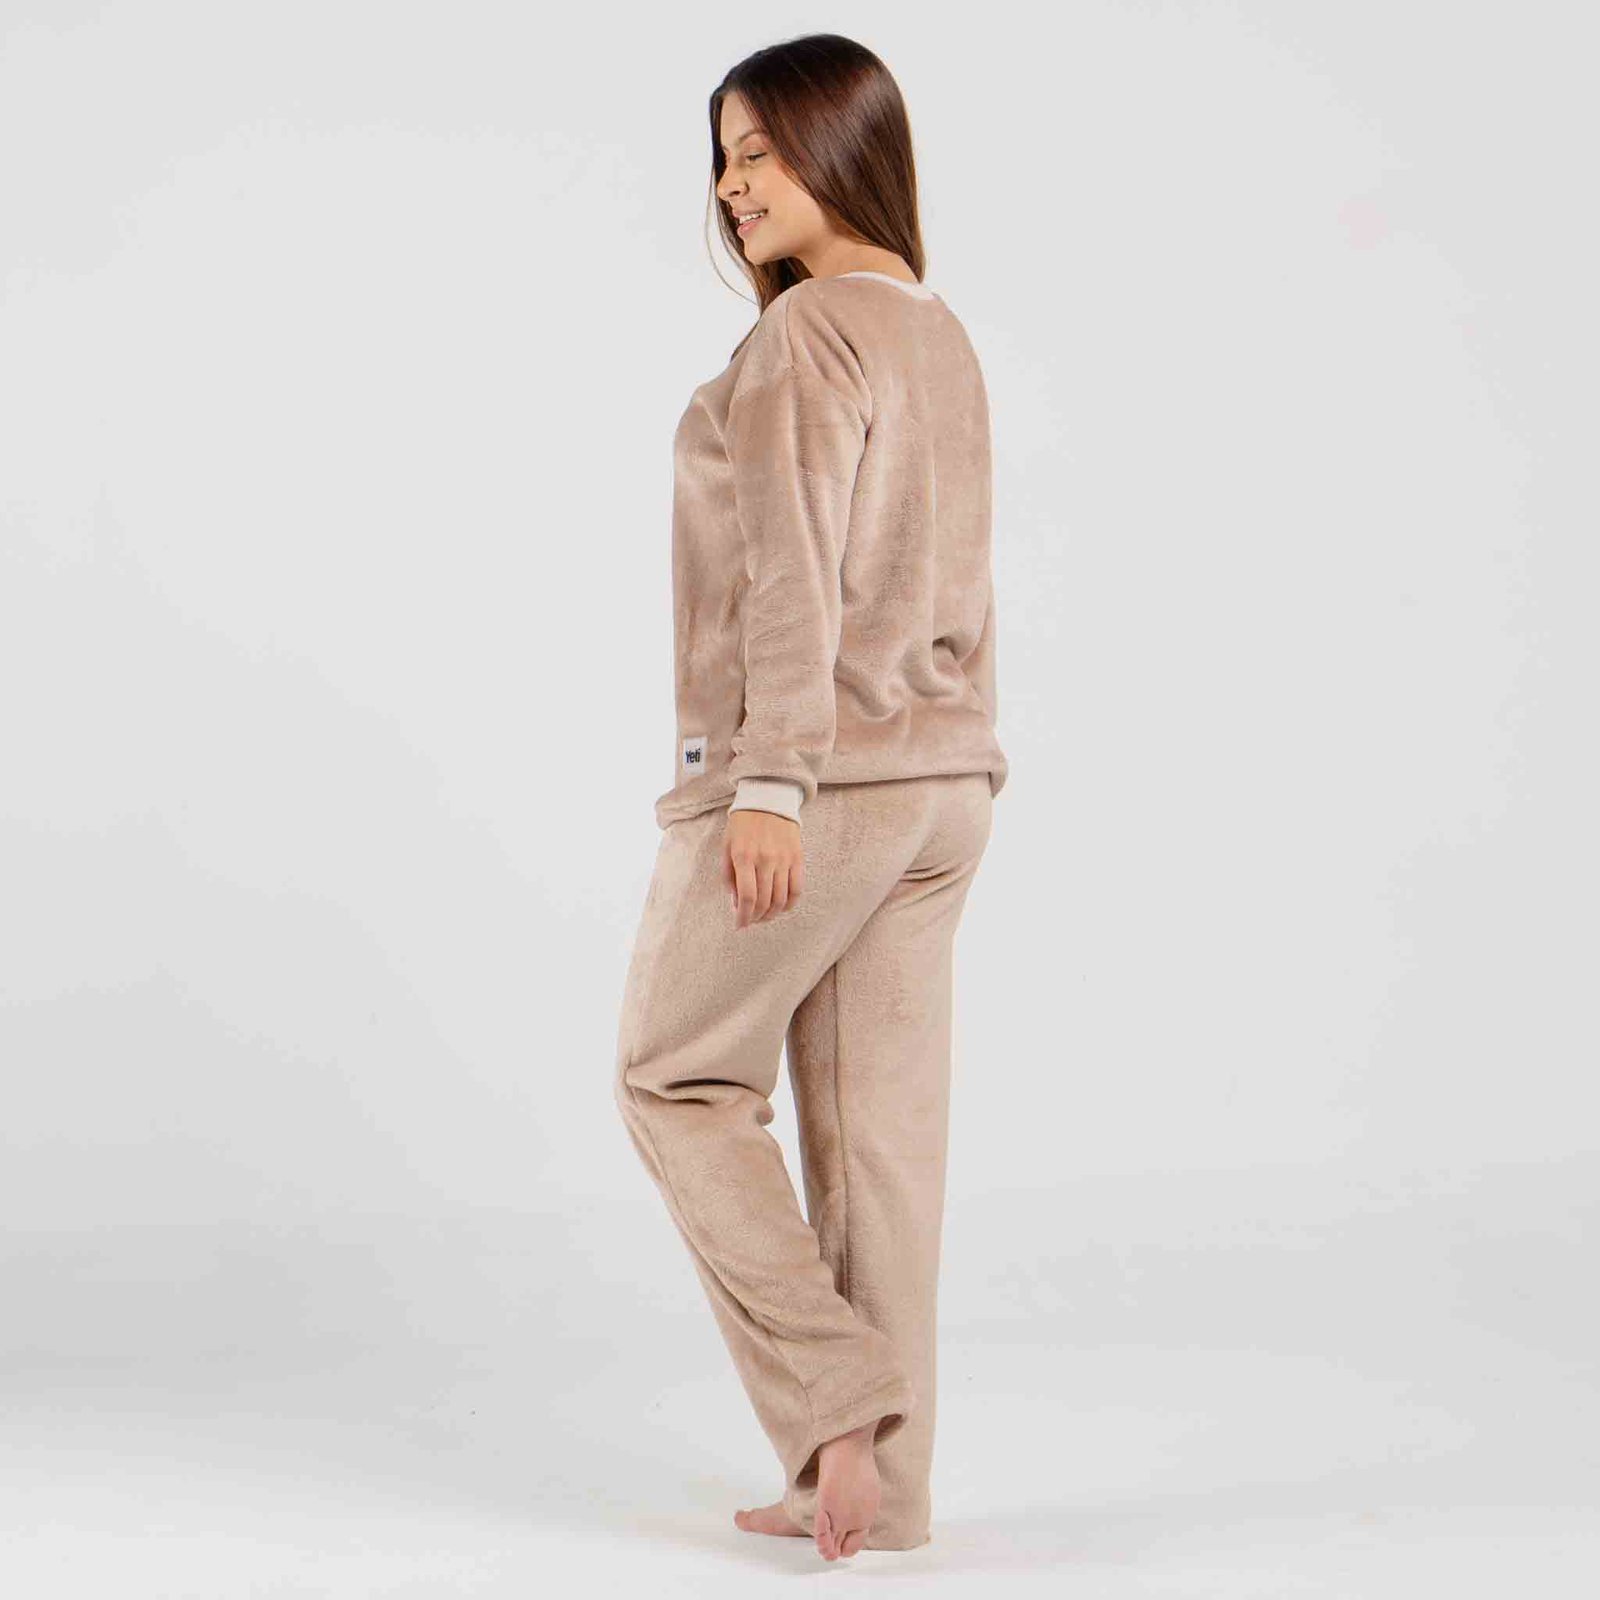 Pijama para mujeres térmica - Conjunto pijama nude largo - Yeti